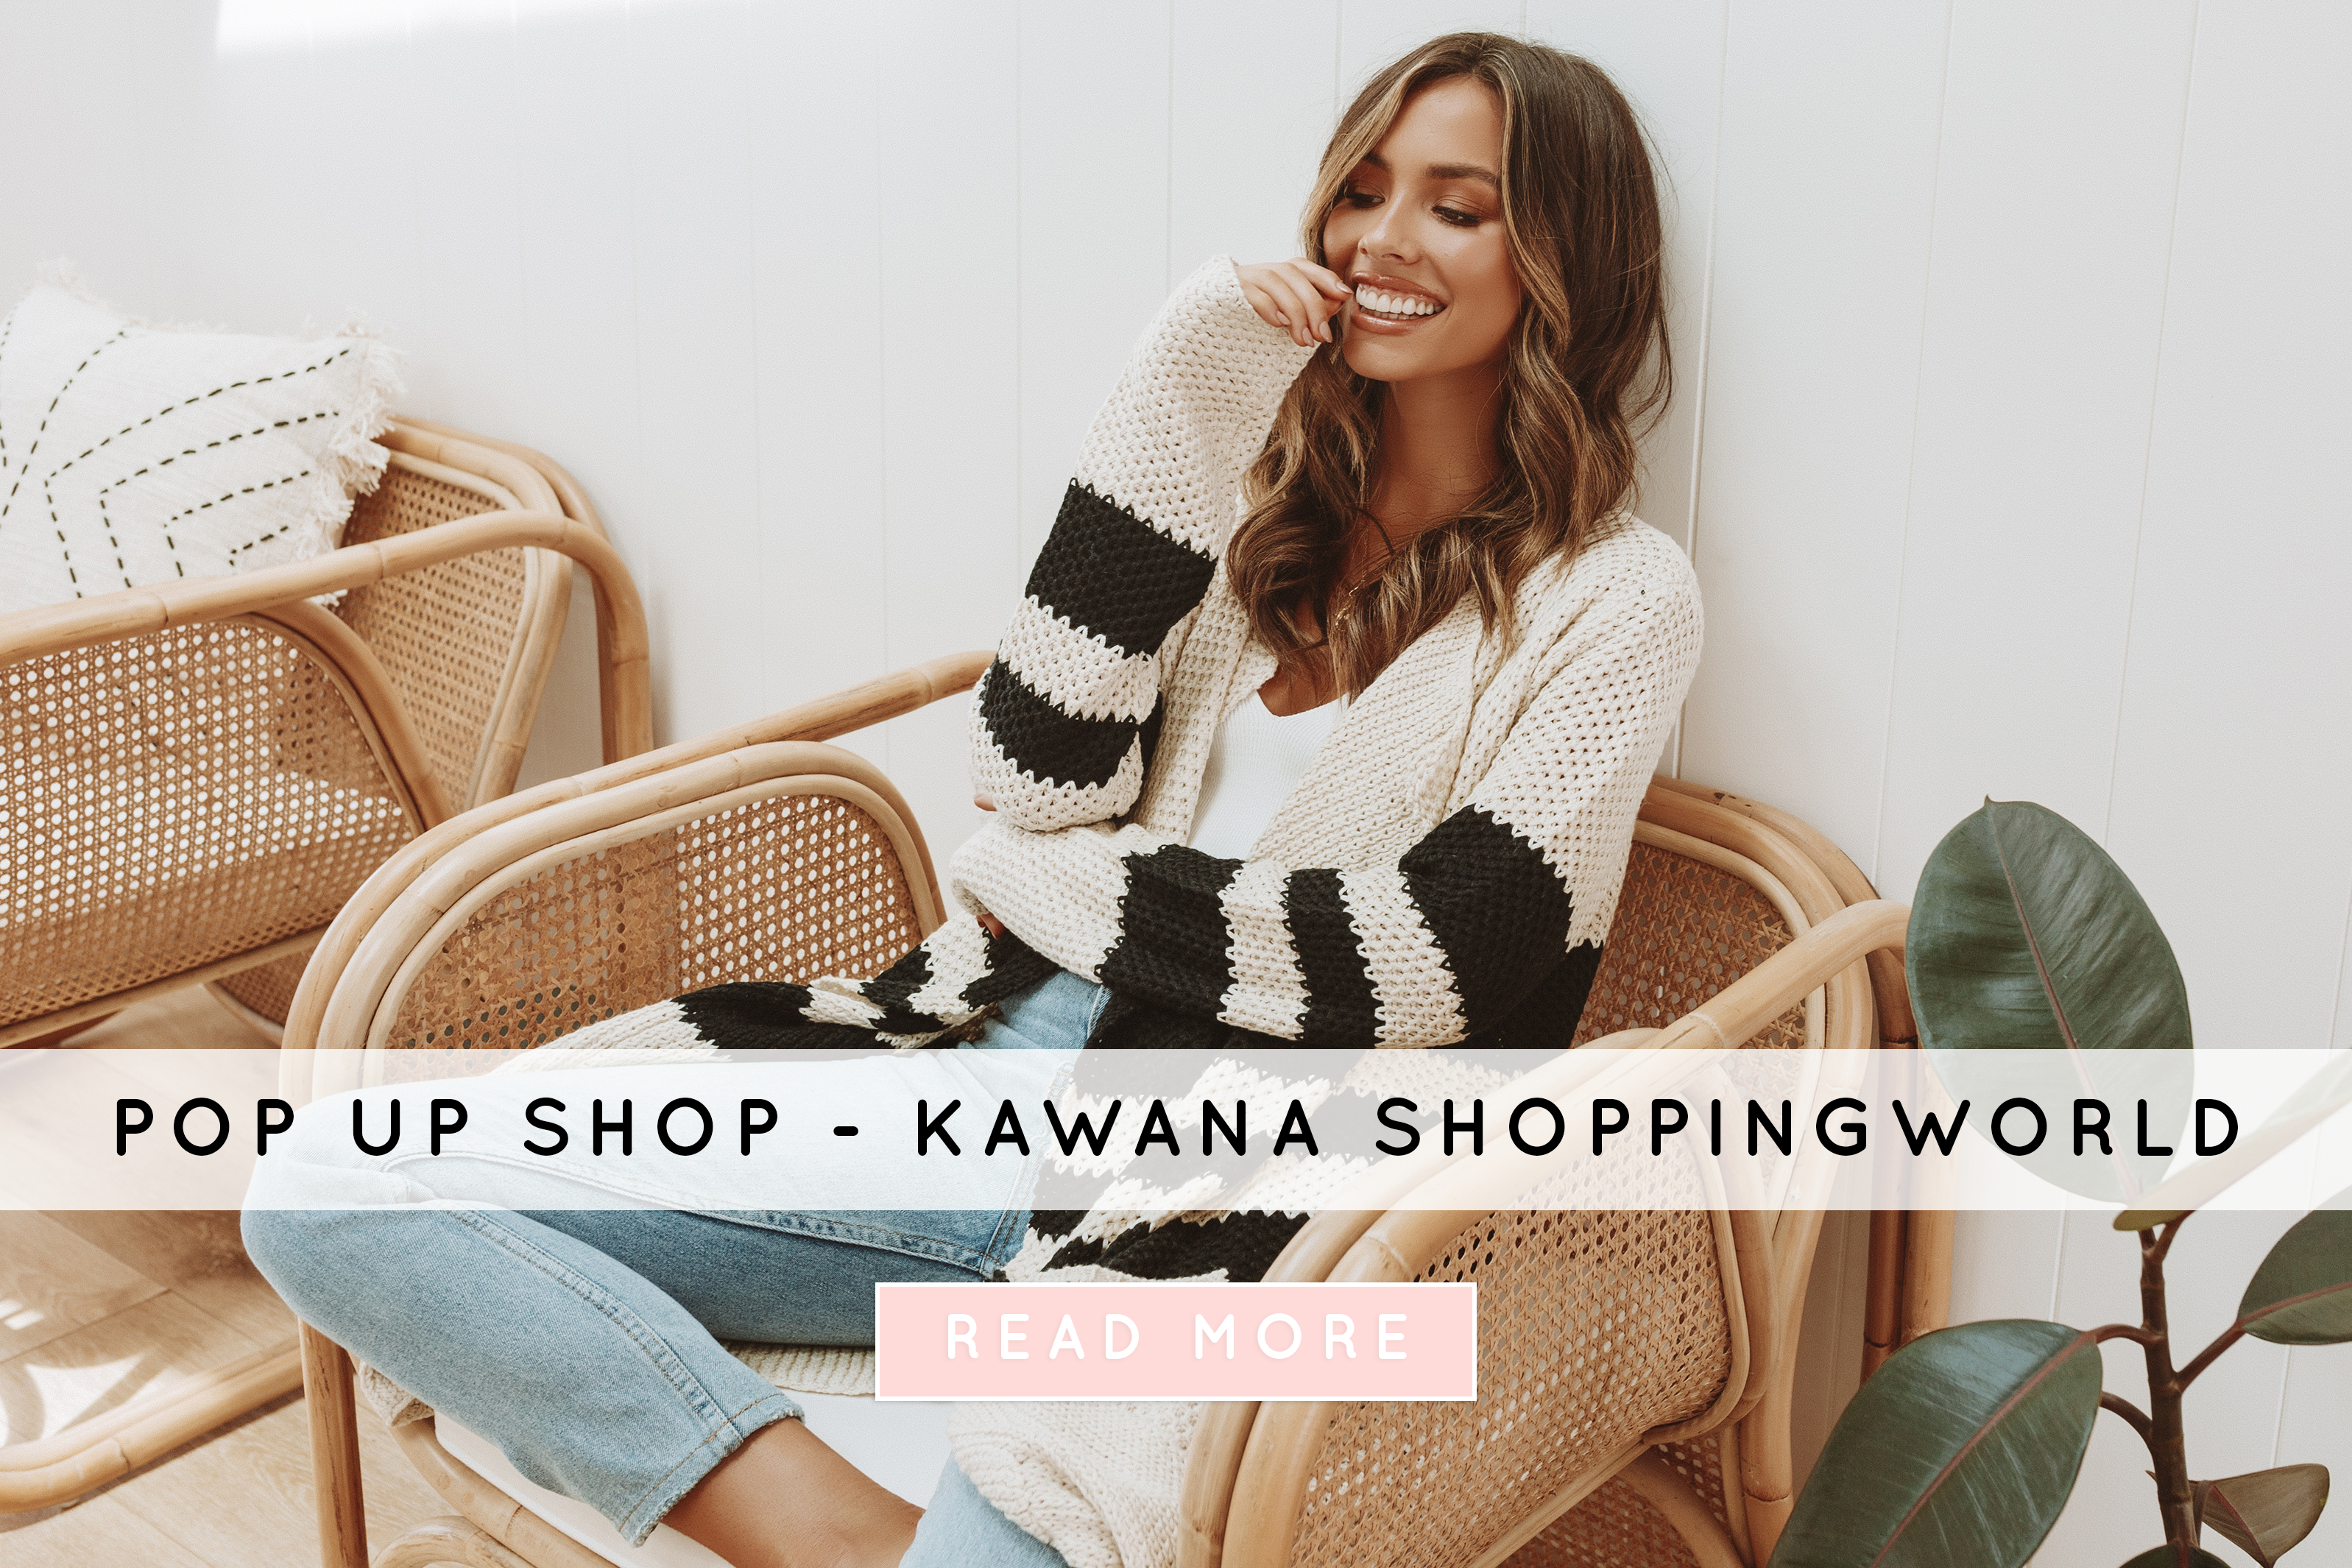 Billy J Pop Up Shop - Kawana Shoppingworld